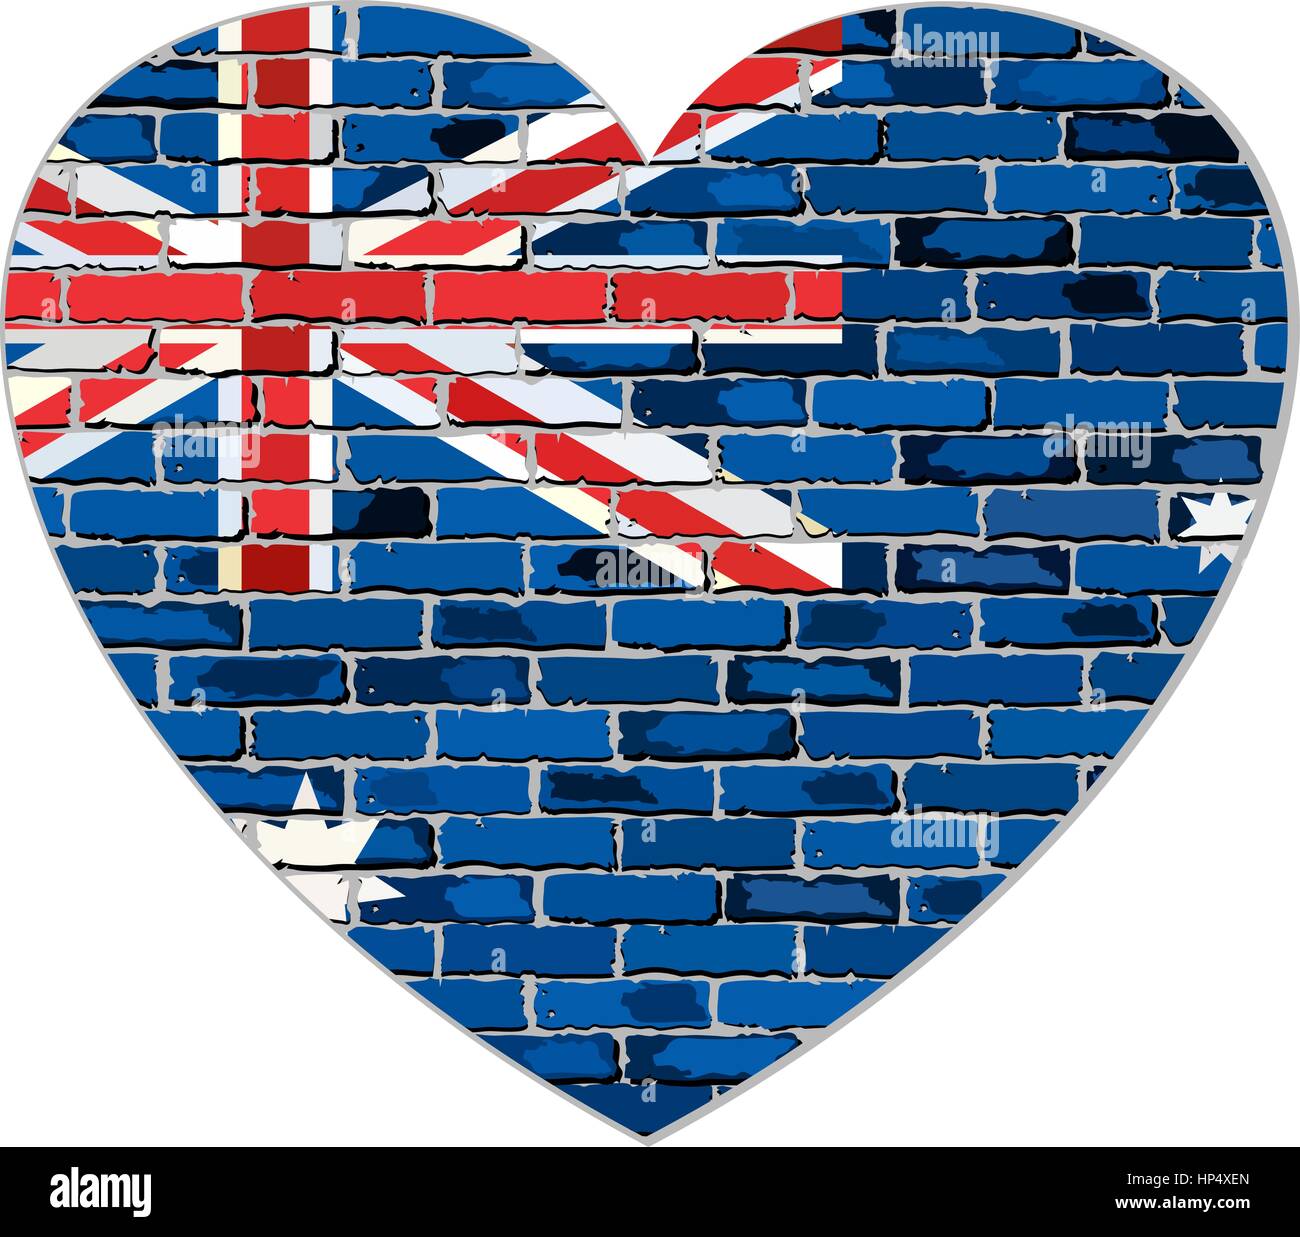 Pavillon de l'Australie sur un mur de briques en forme de coeur - Illustration, drapeau national australien en brique, de style Abstract grunge drapeau Australie Illustration de Vecteur